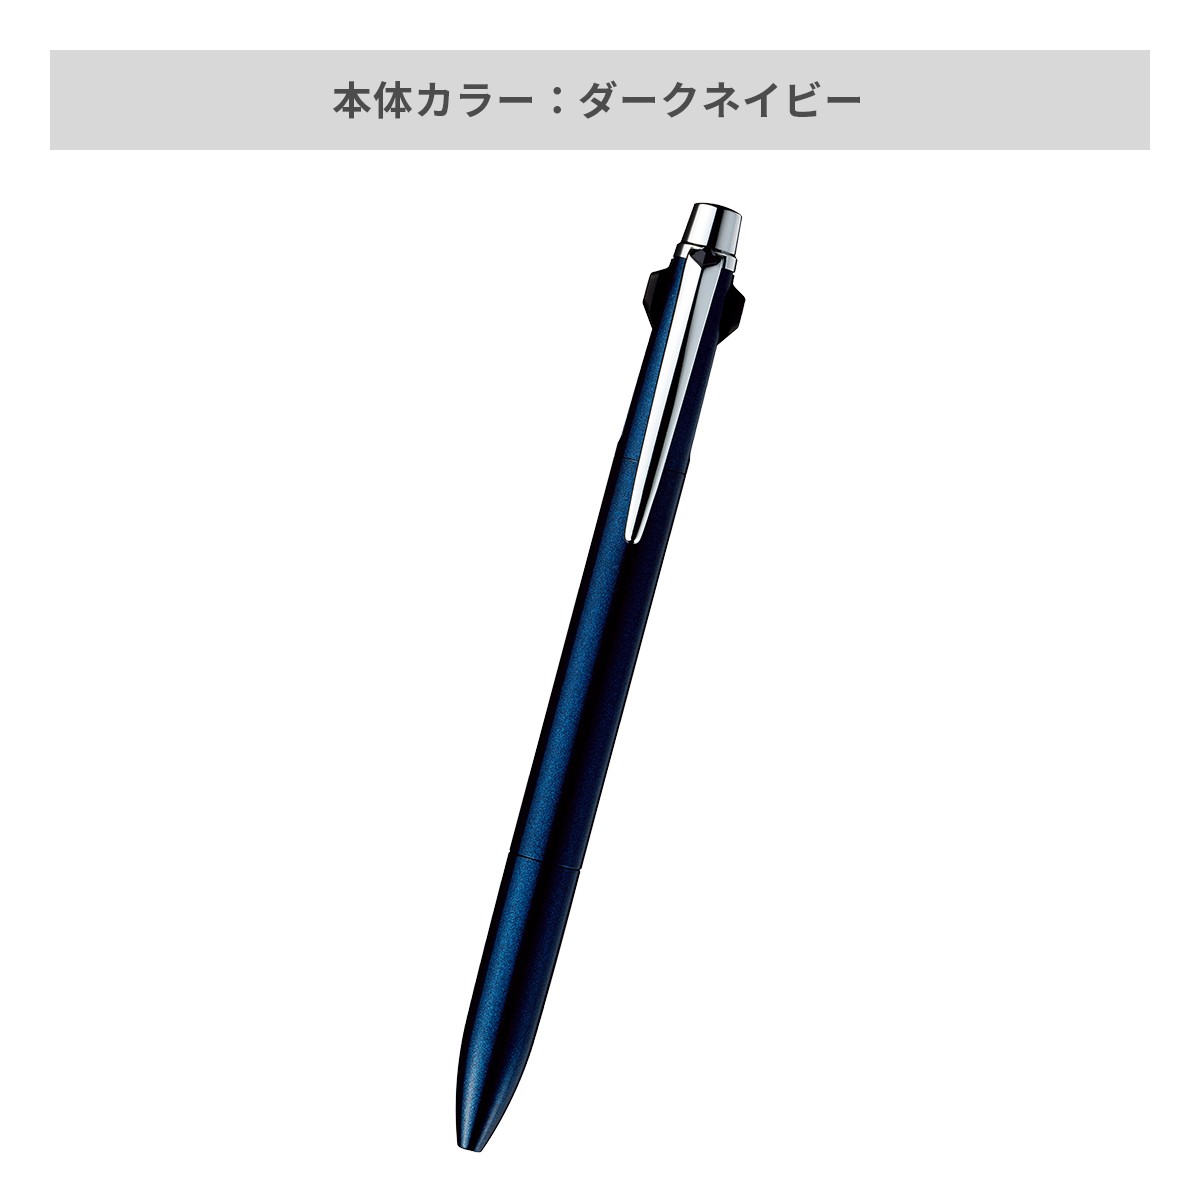 【短納期】三菱鉛筆 ジェットストリーム プライム 3色ボールペン 0.5mm【名入れボールペン / レーザー彫刻】 画像4